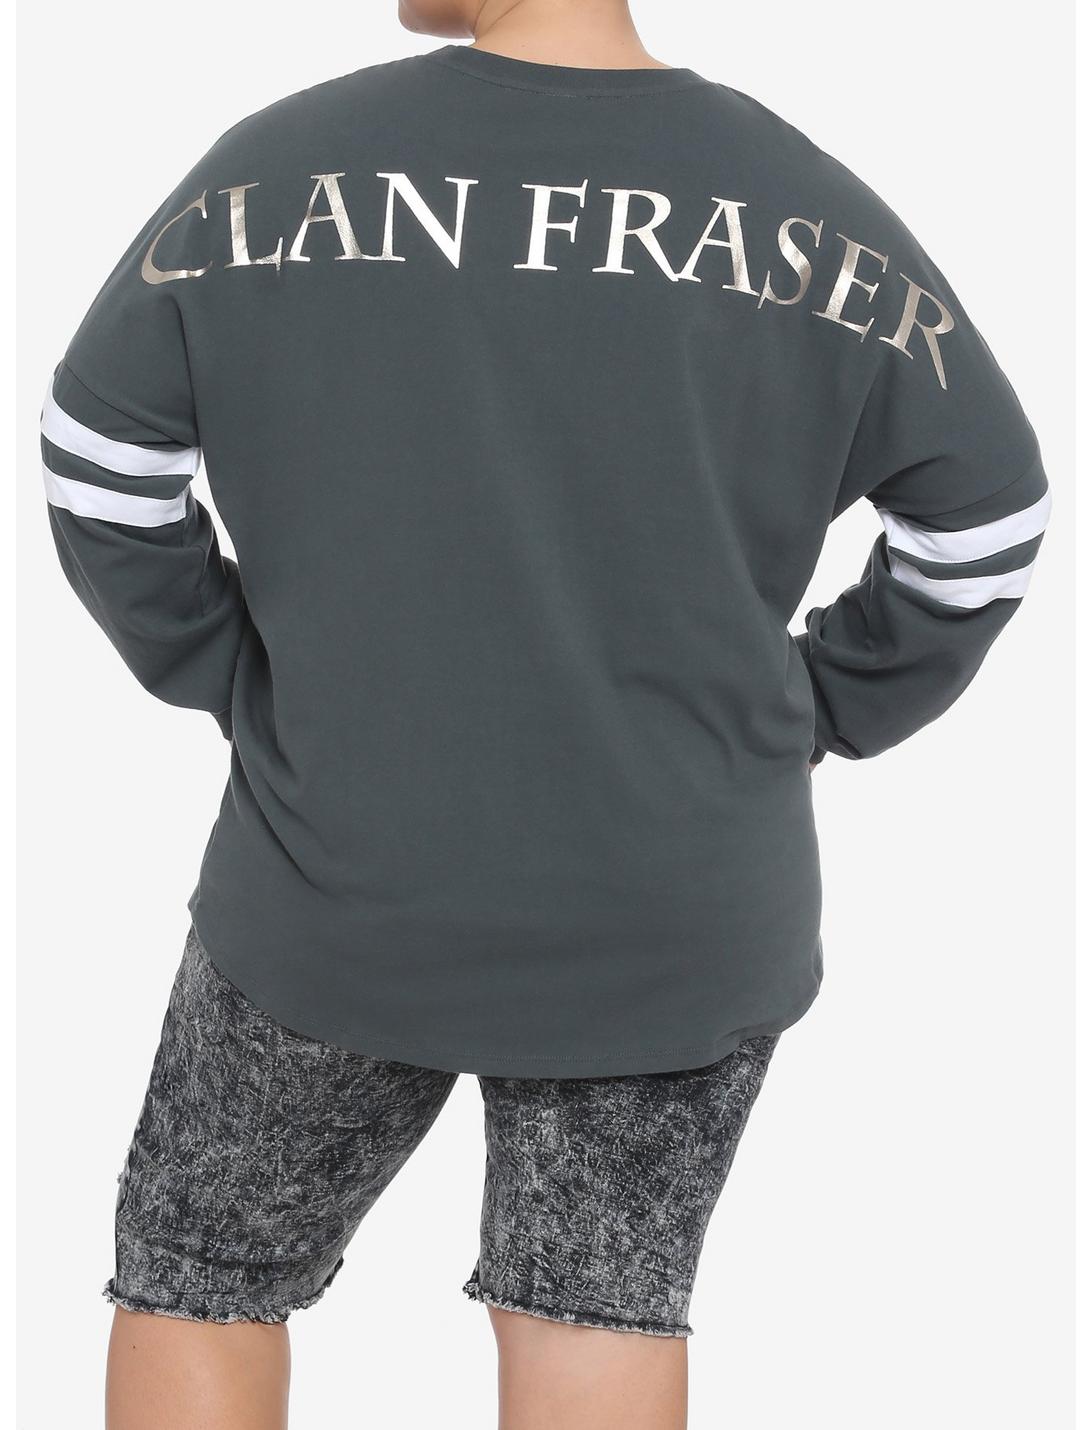 Outlander Clan Fraser Athletic Jersey Plus Size, MULTI, hi-res